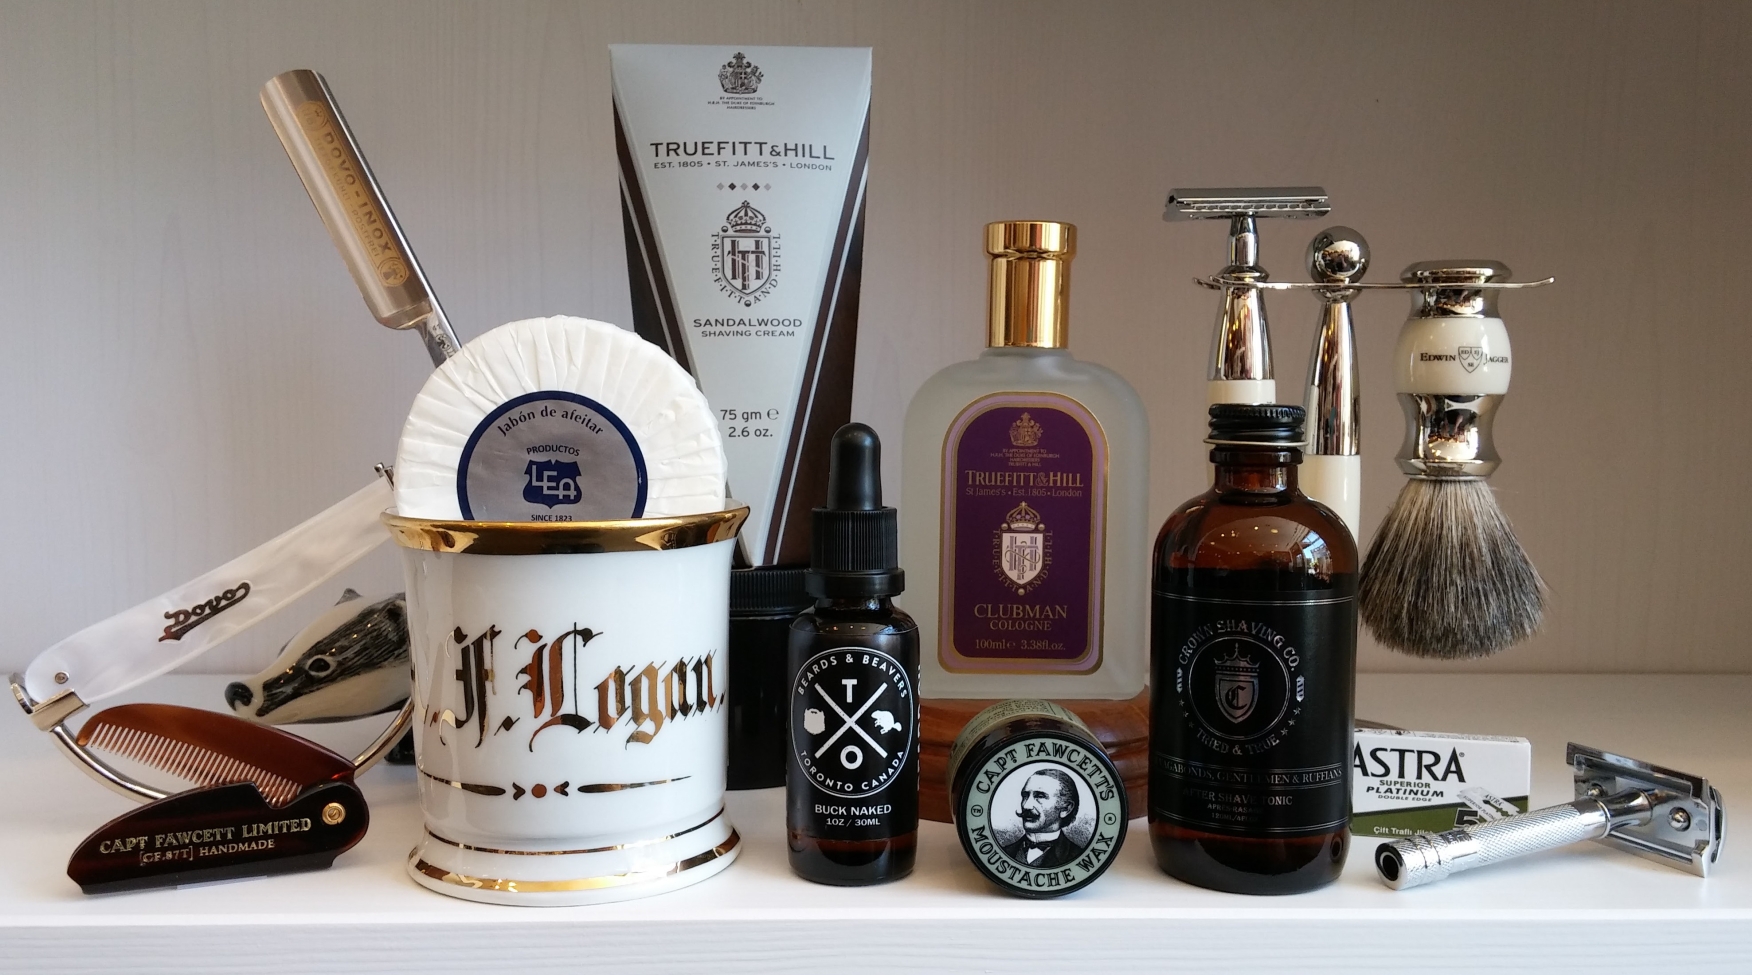 luxury men's grooming kit